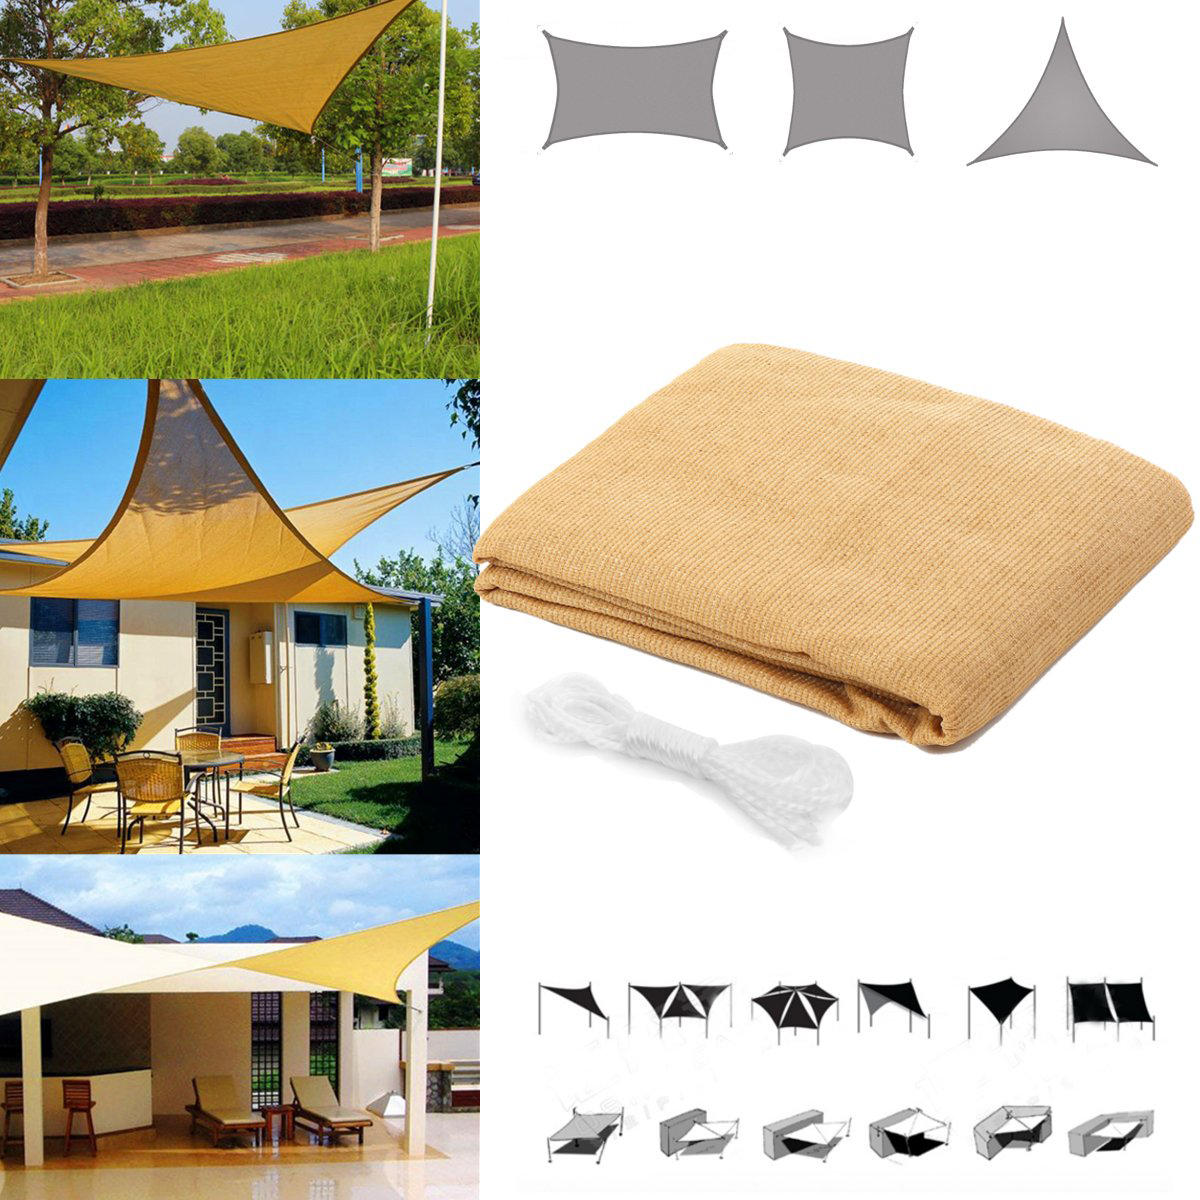 Tente de quadrilatère/triangle pour la protection solaire, imperméable et anti-UV, avec auvent pour jardin, patio, camping extérieur.